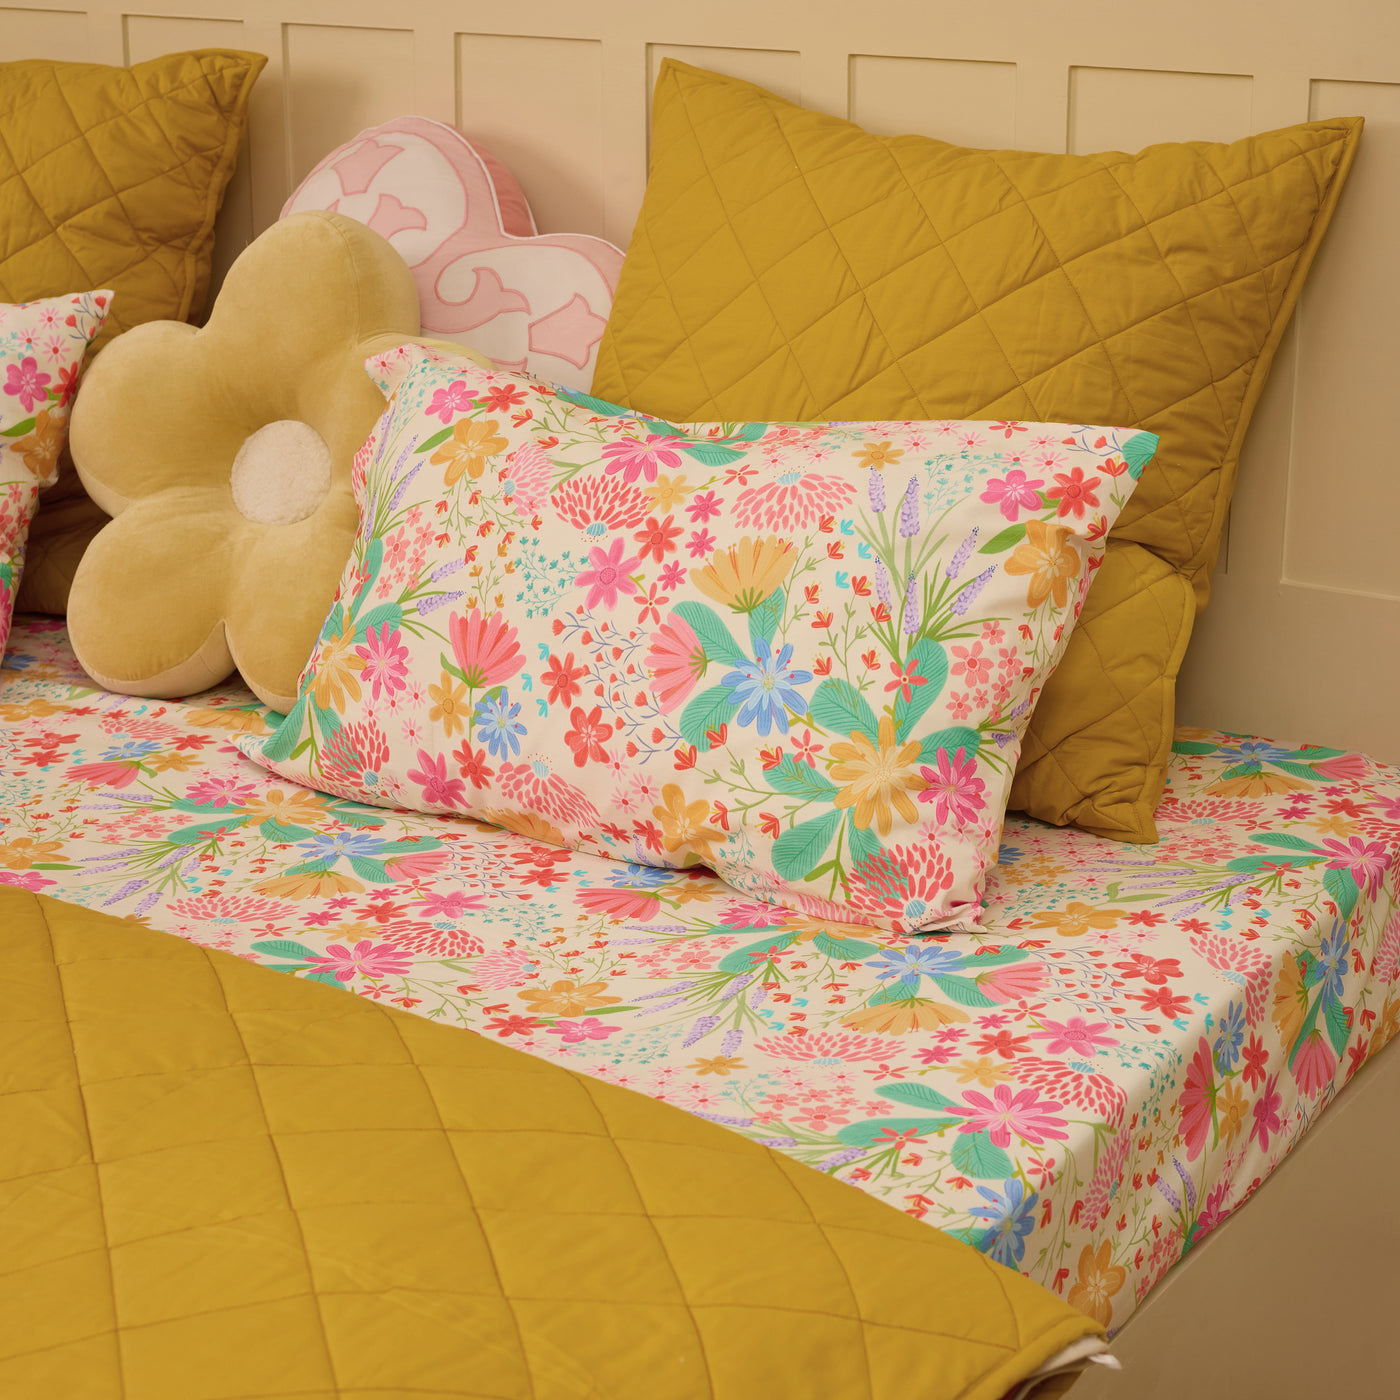 Floral Dreams Organic Cotton Bedsheet Set